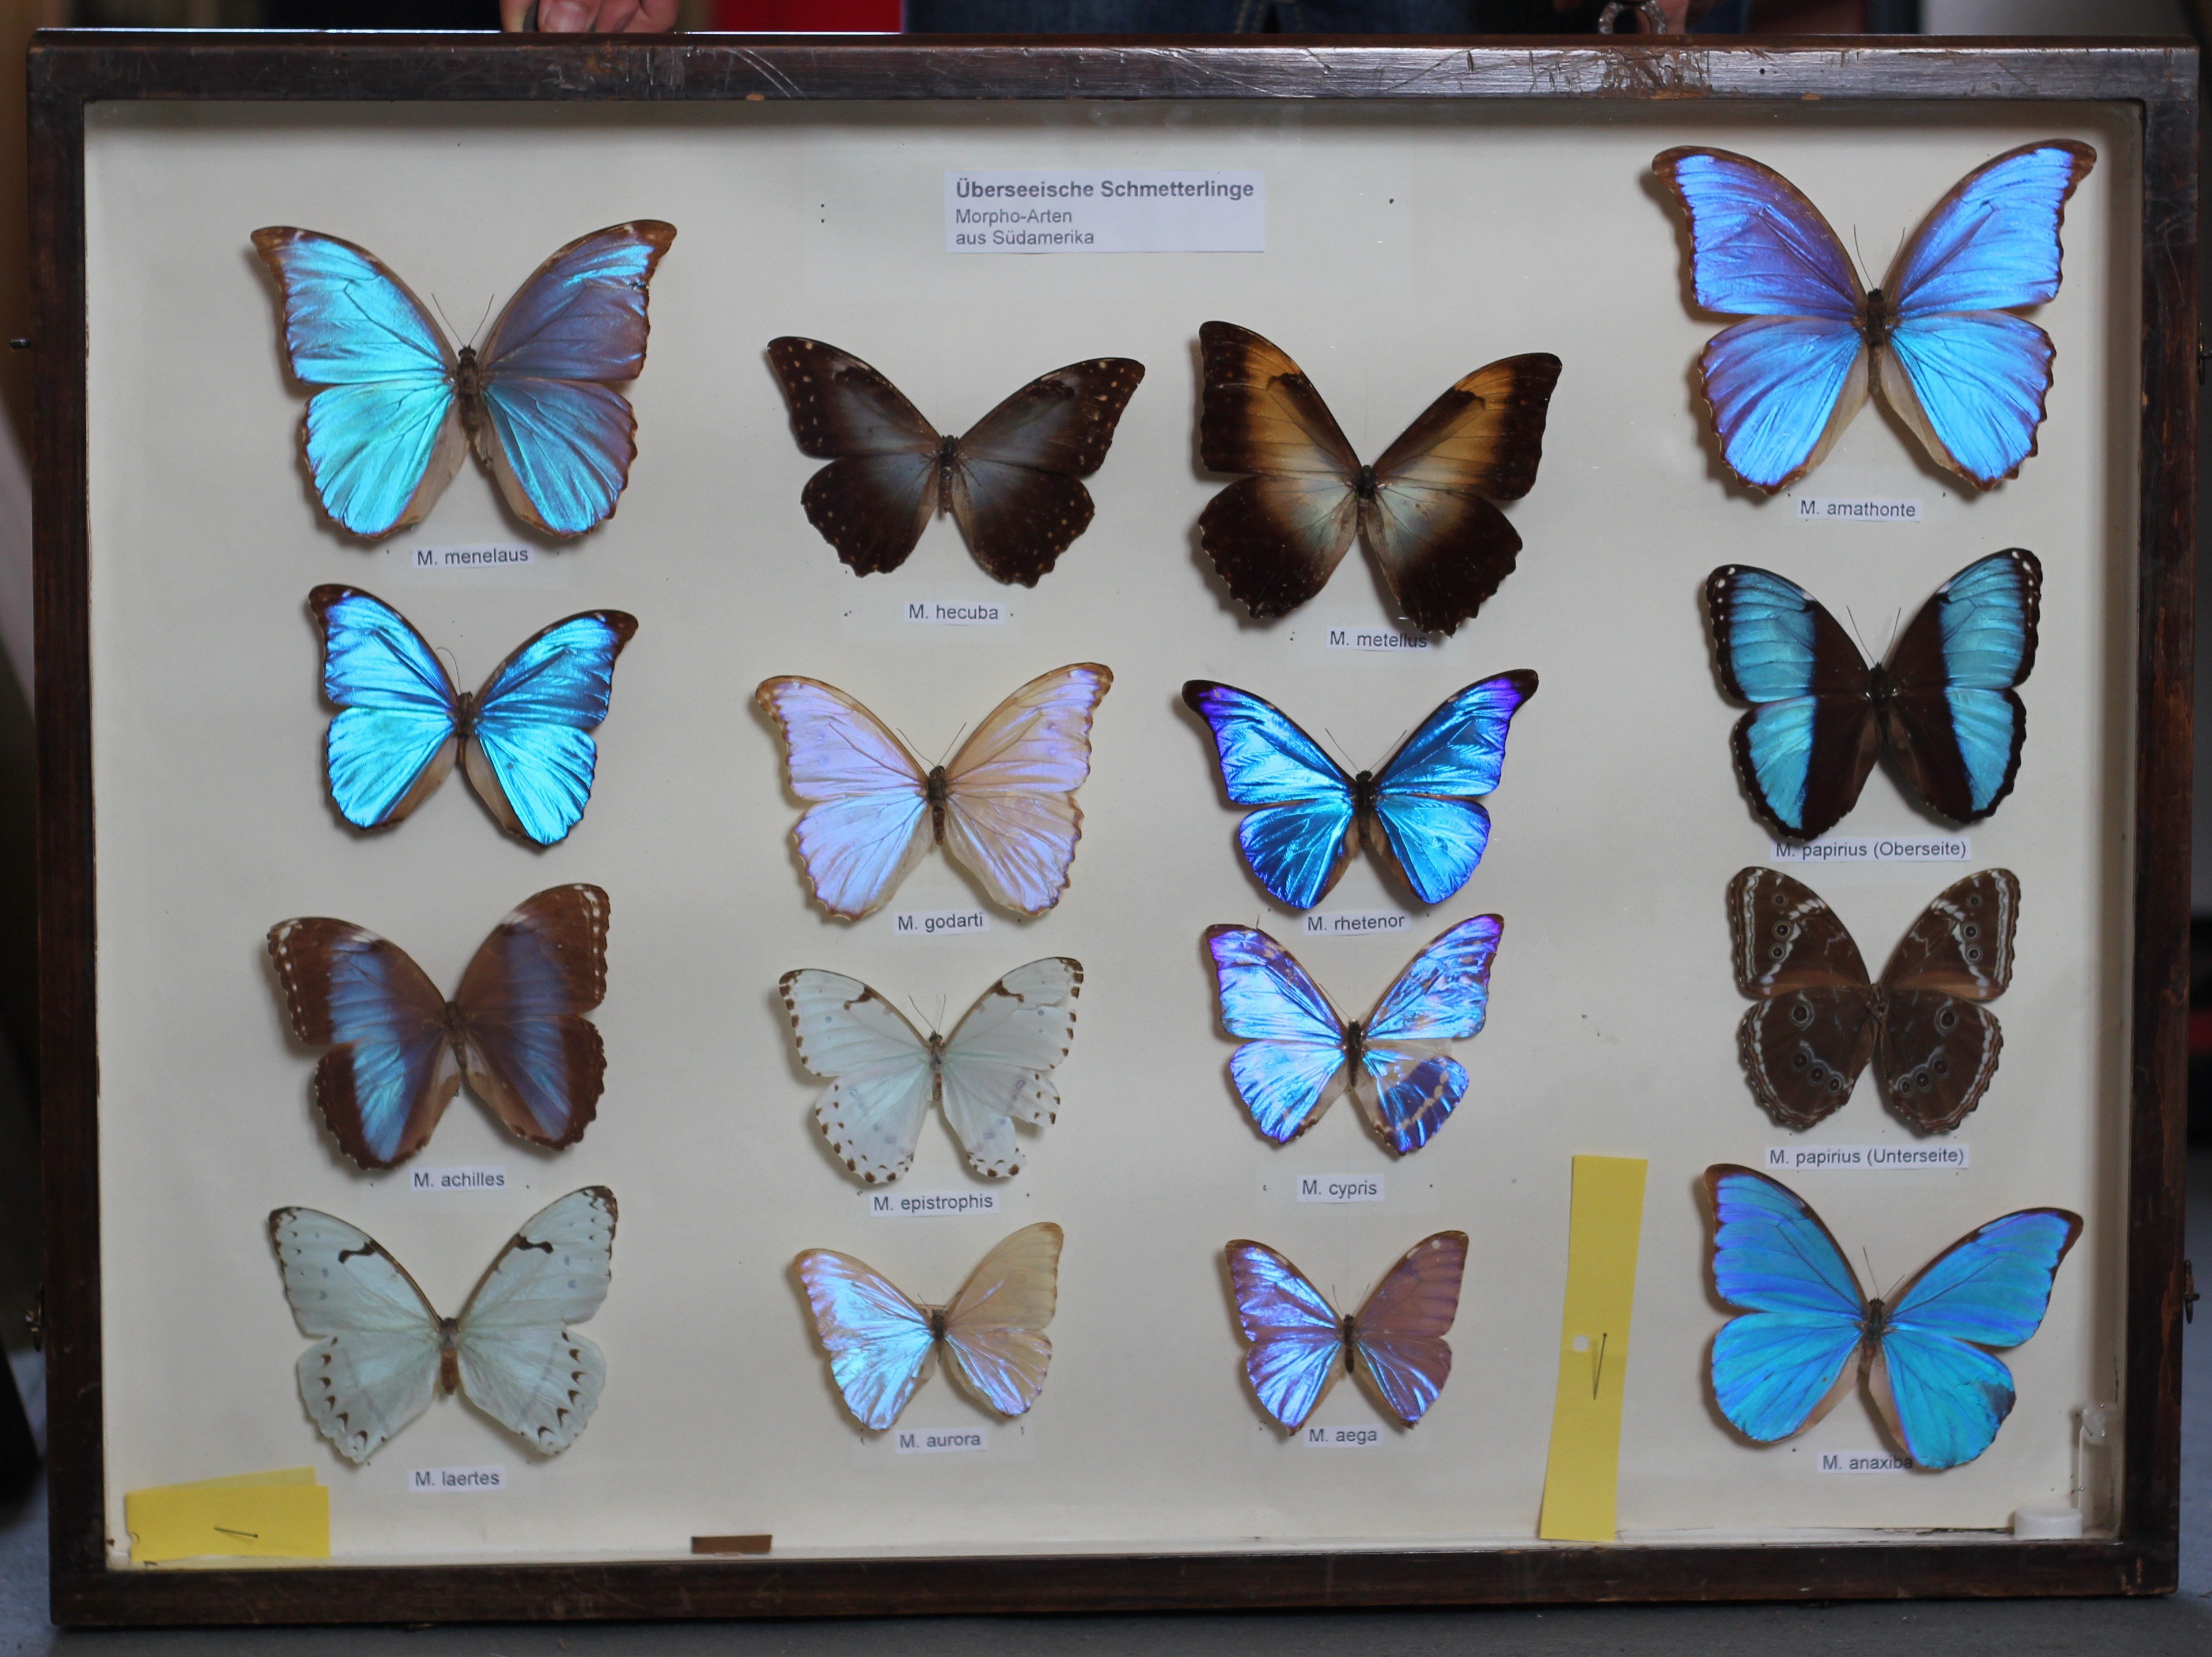 Überseeische Schmetterlinge (futurum vogtland e. V. (Museum Burg Mylau) CC BY-NC-SA)